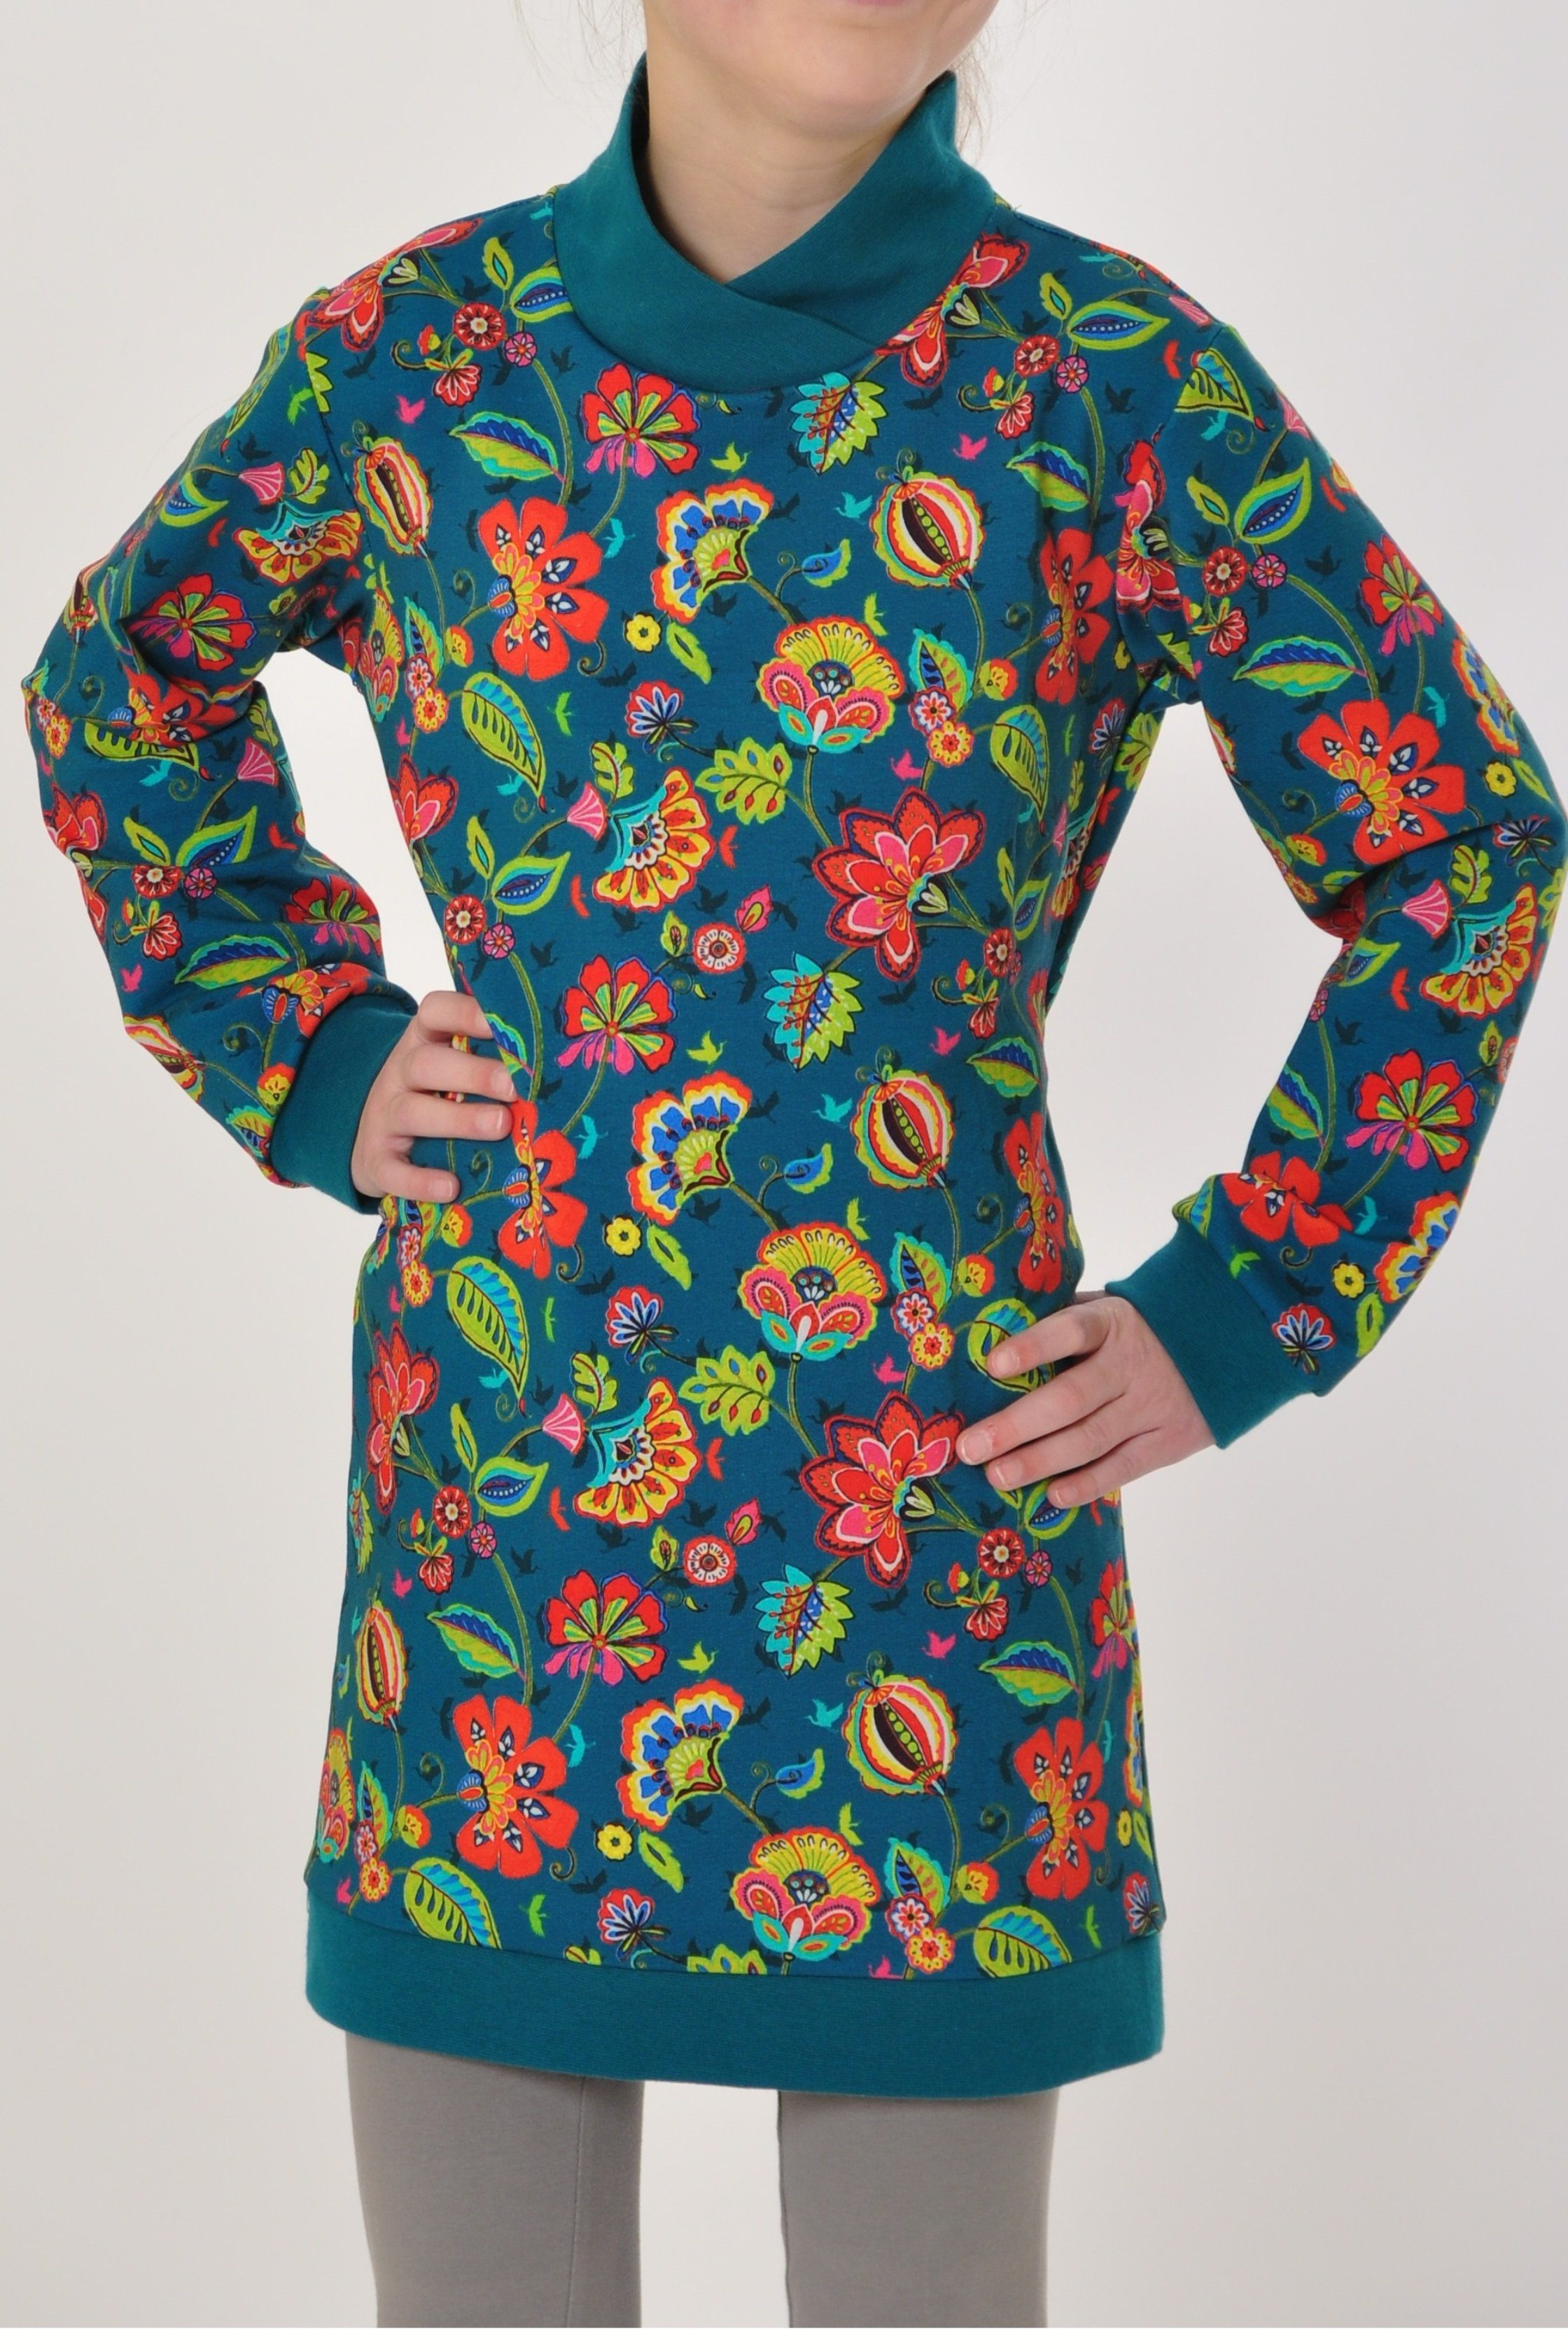 Sweatkleid Motivdruck coole Blumen Mädchen petrol mit Produktion Sweatshirt europäische coolismo Kleid für